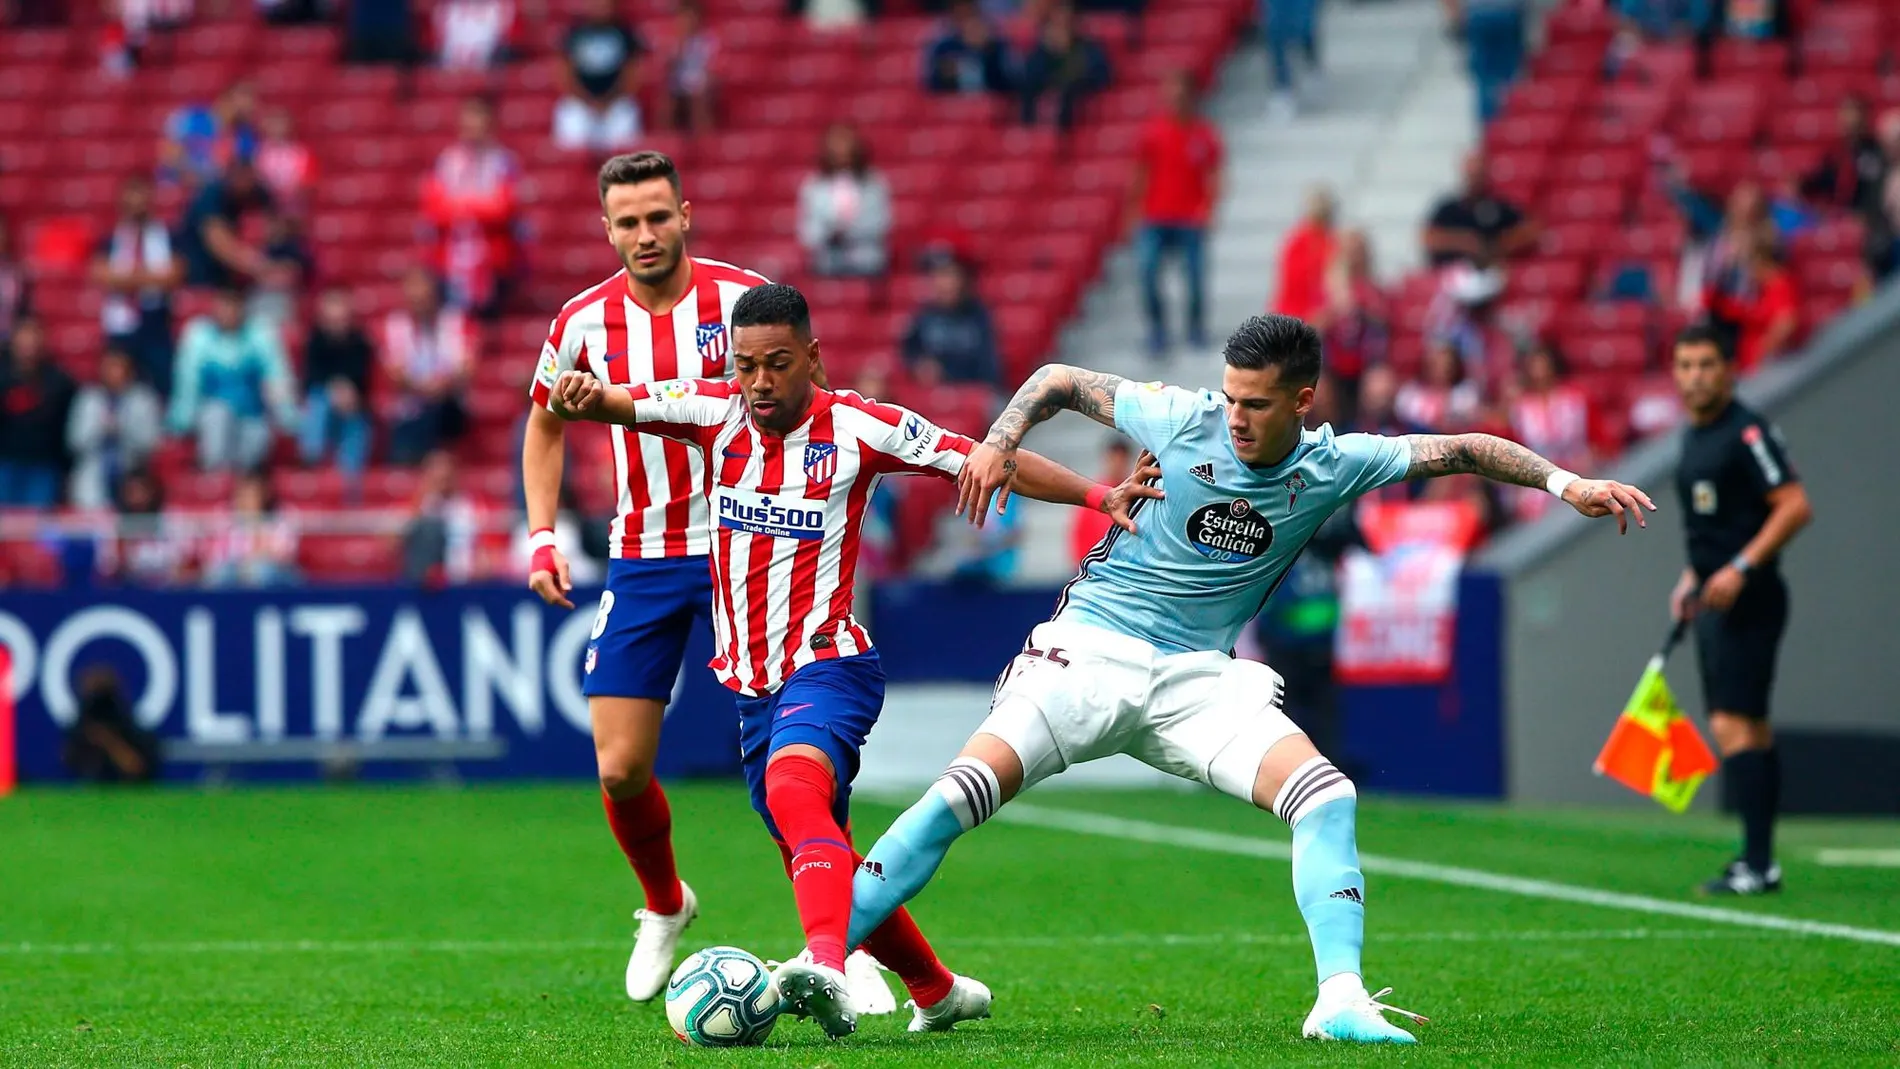 El jugador del Atlético de Madrid, Renan Lodi disputa el balón con el jugador del Celta de Vigo Santiago Mina/Efe